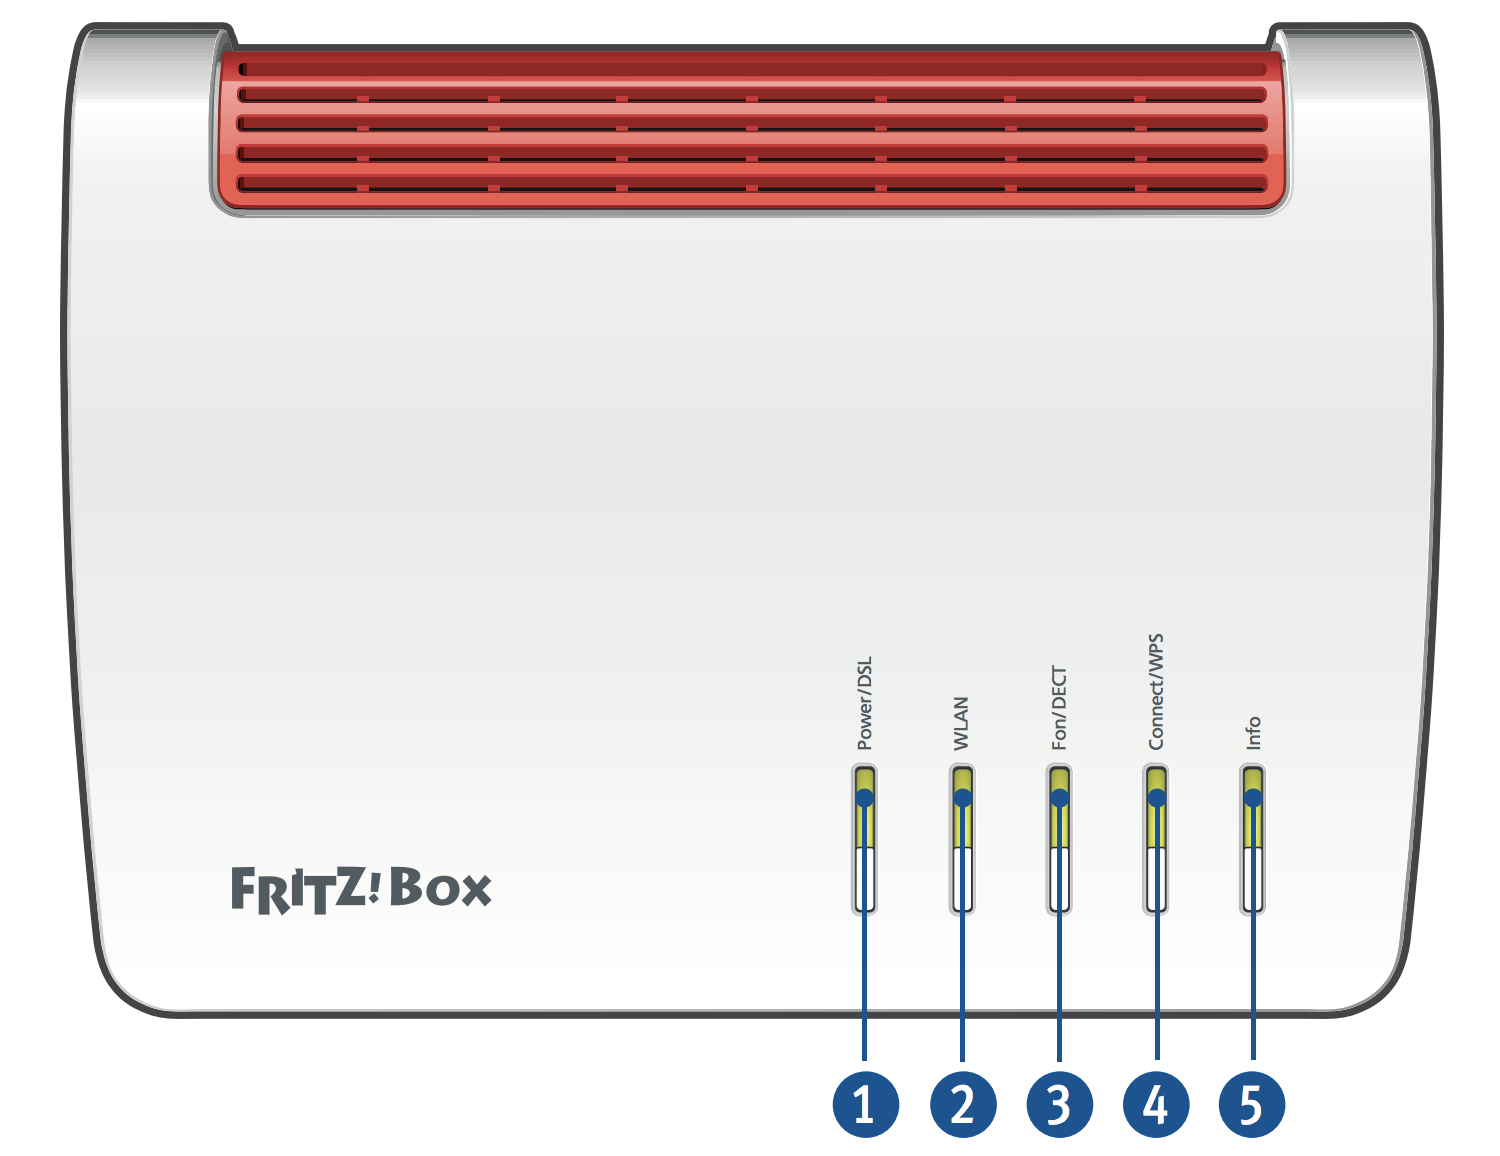 Changer de modem/routeur fibre? Pas si simple avec Fritz!…